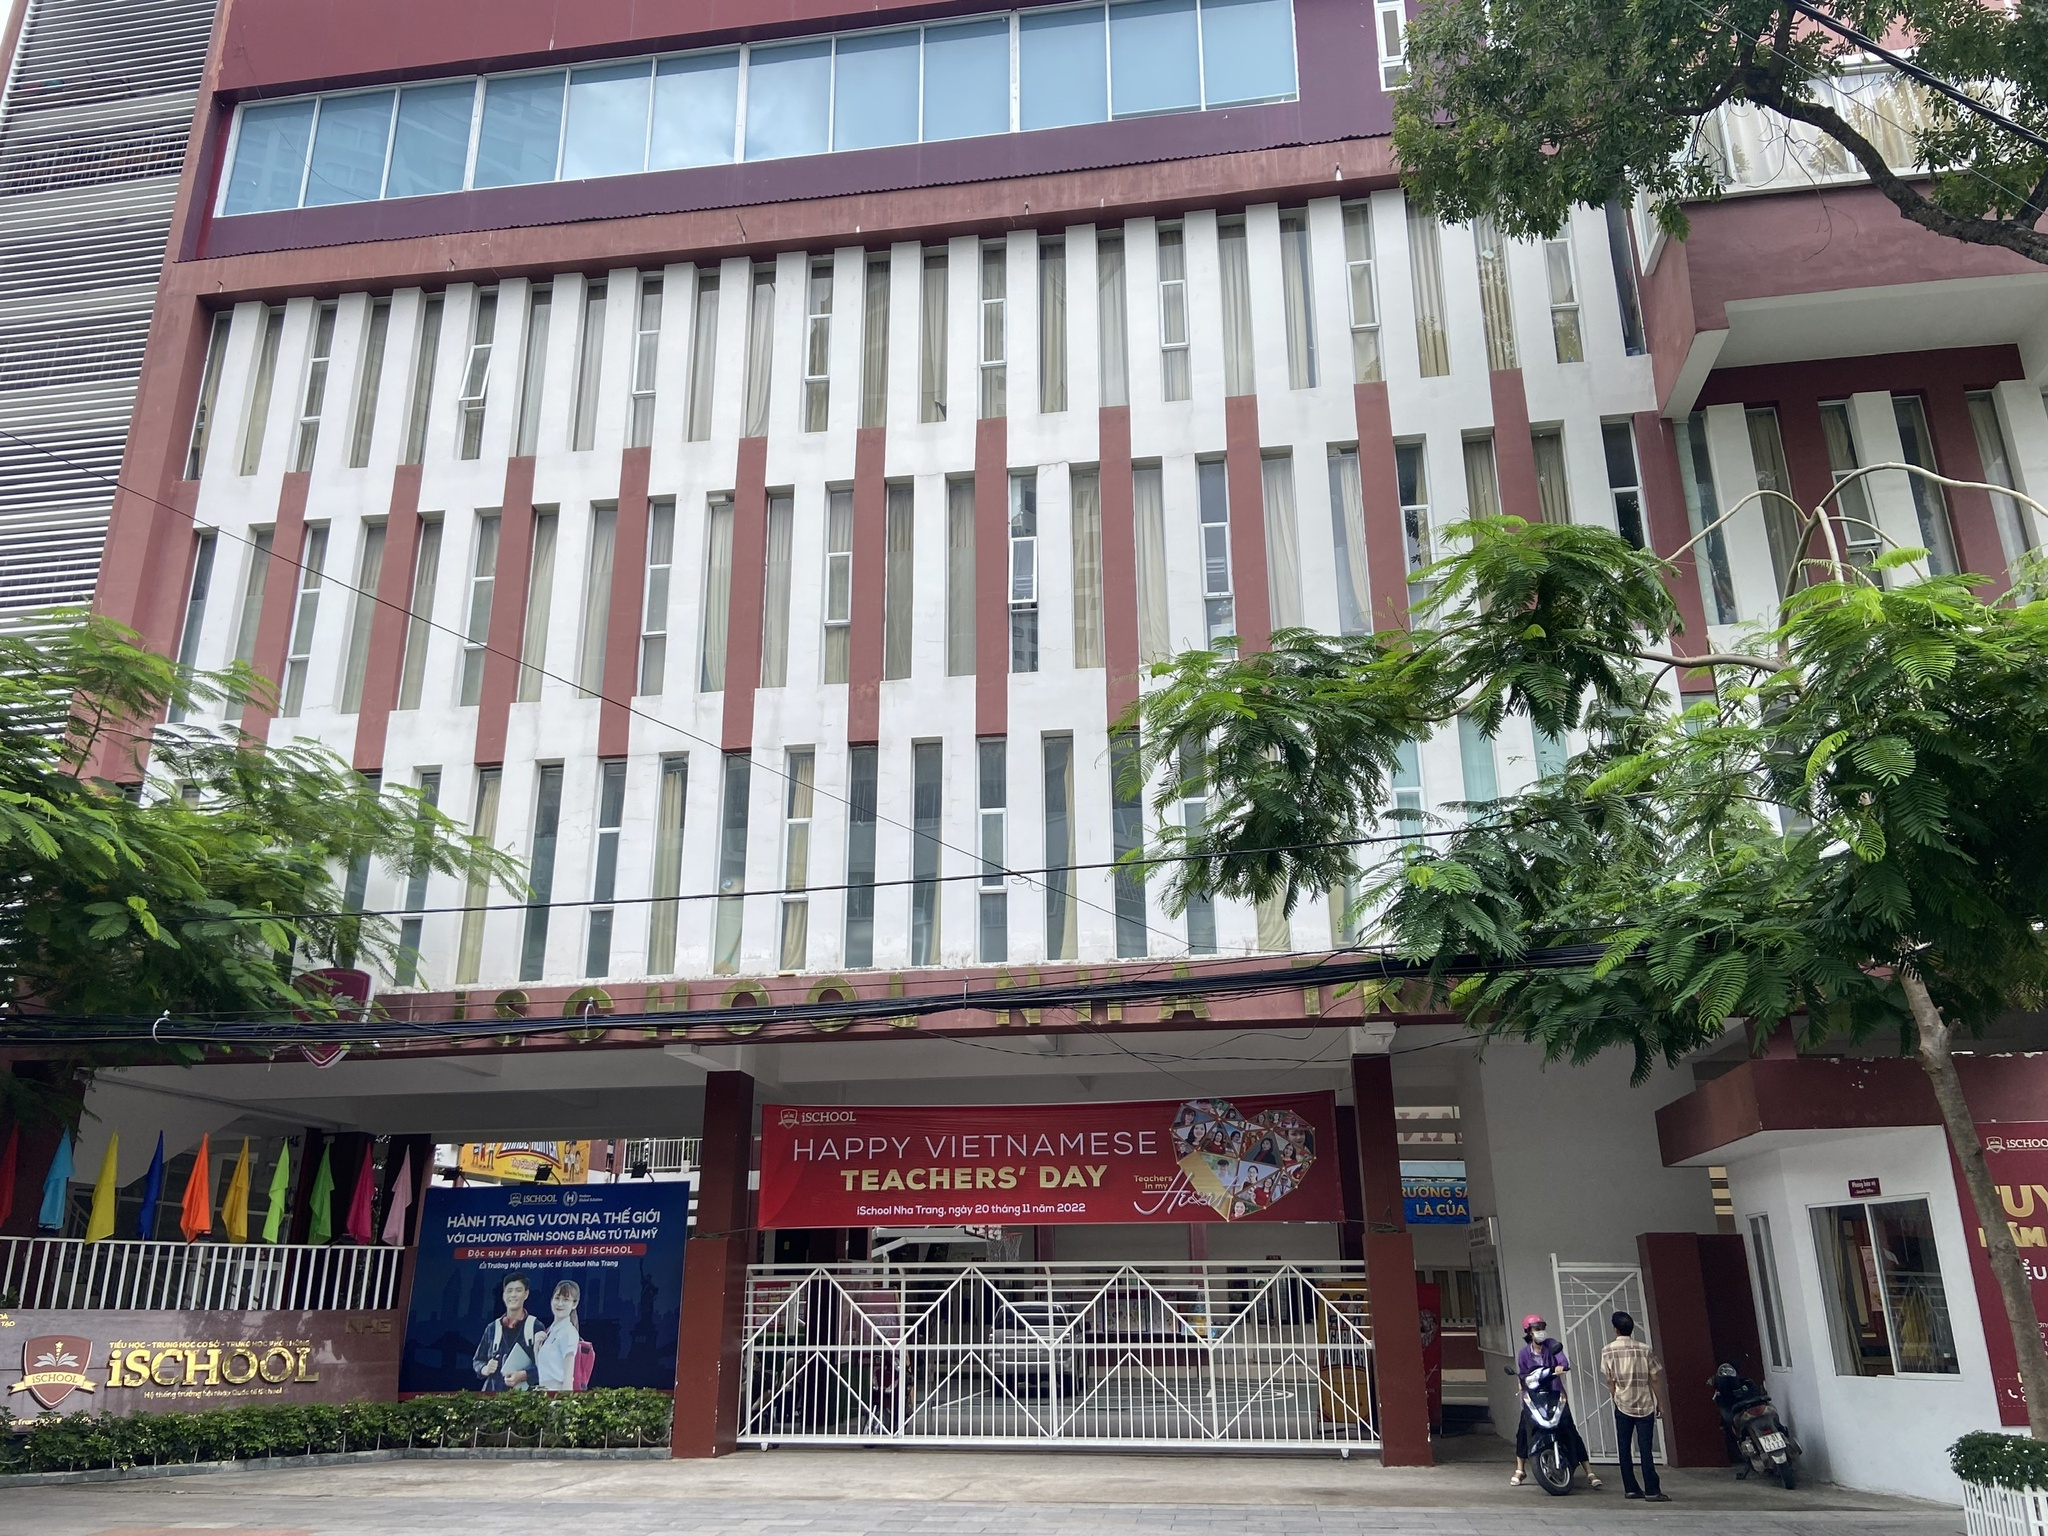 Chính quyền địa phương và cơ quan Y tế đang tích cực hỗ trợ điều trị cho các học sinh bị ngộ độc thực phẩm ở Trường Ishool Nha Trang. (Ảnh: Hữu Toàn)